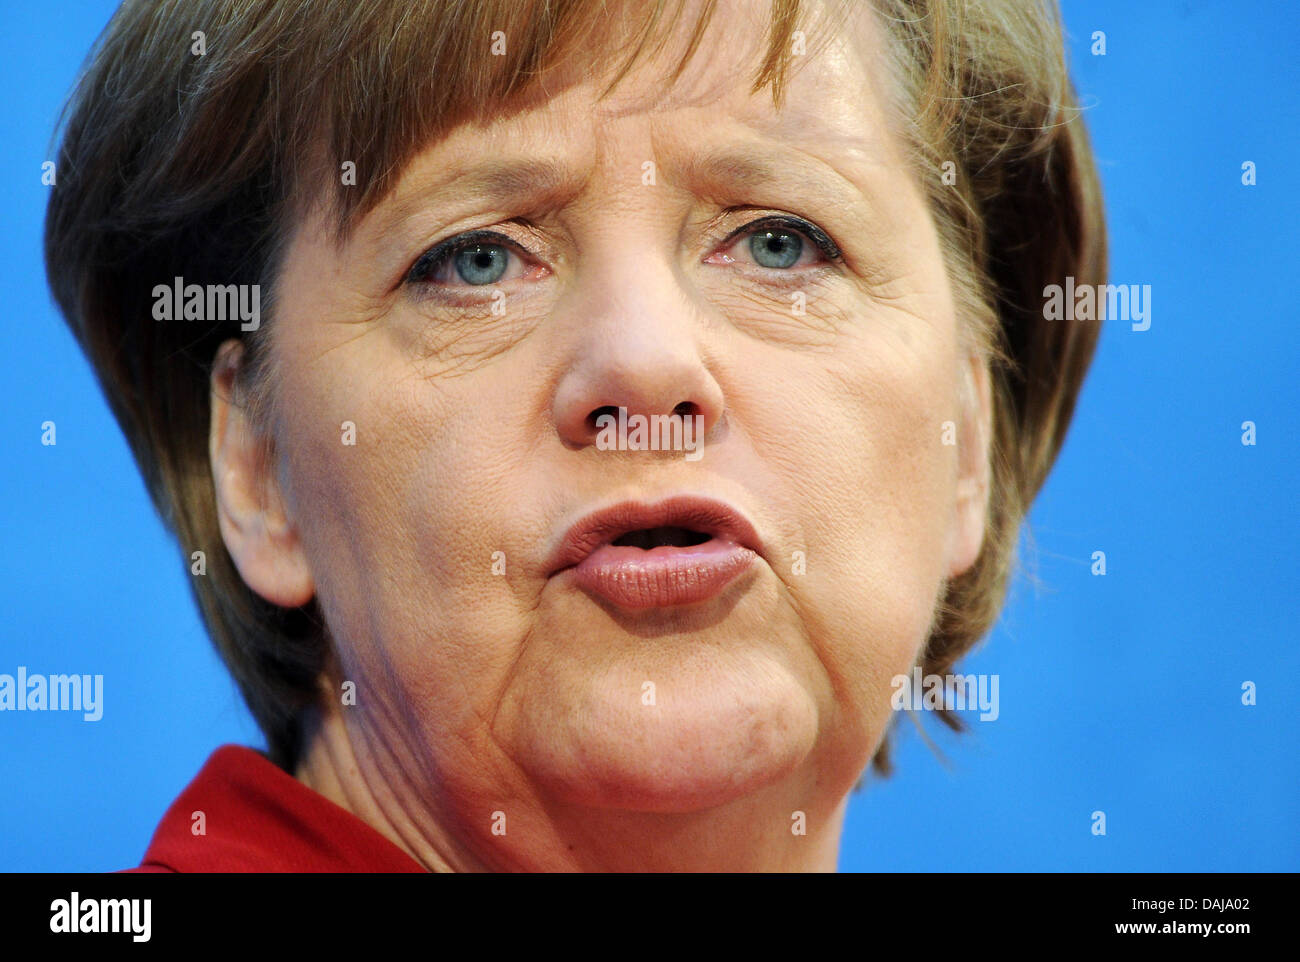 Il cancelliere tedesco Angela Merkel offre una pressa confernece dopo una sedia CDU incontro sui risultati della Renania Palatinato e Baden Wuerttemberg alle elezioni statali al CDU sede federale a Berlino, Germania, 28 marzo 2011. Foto: Annibale Foto Stock